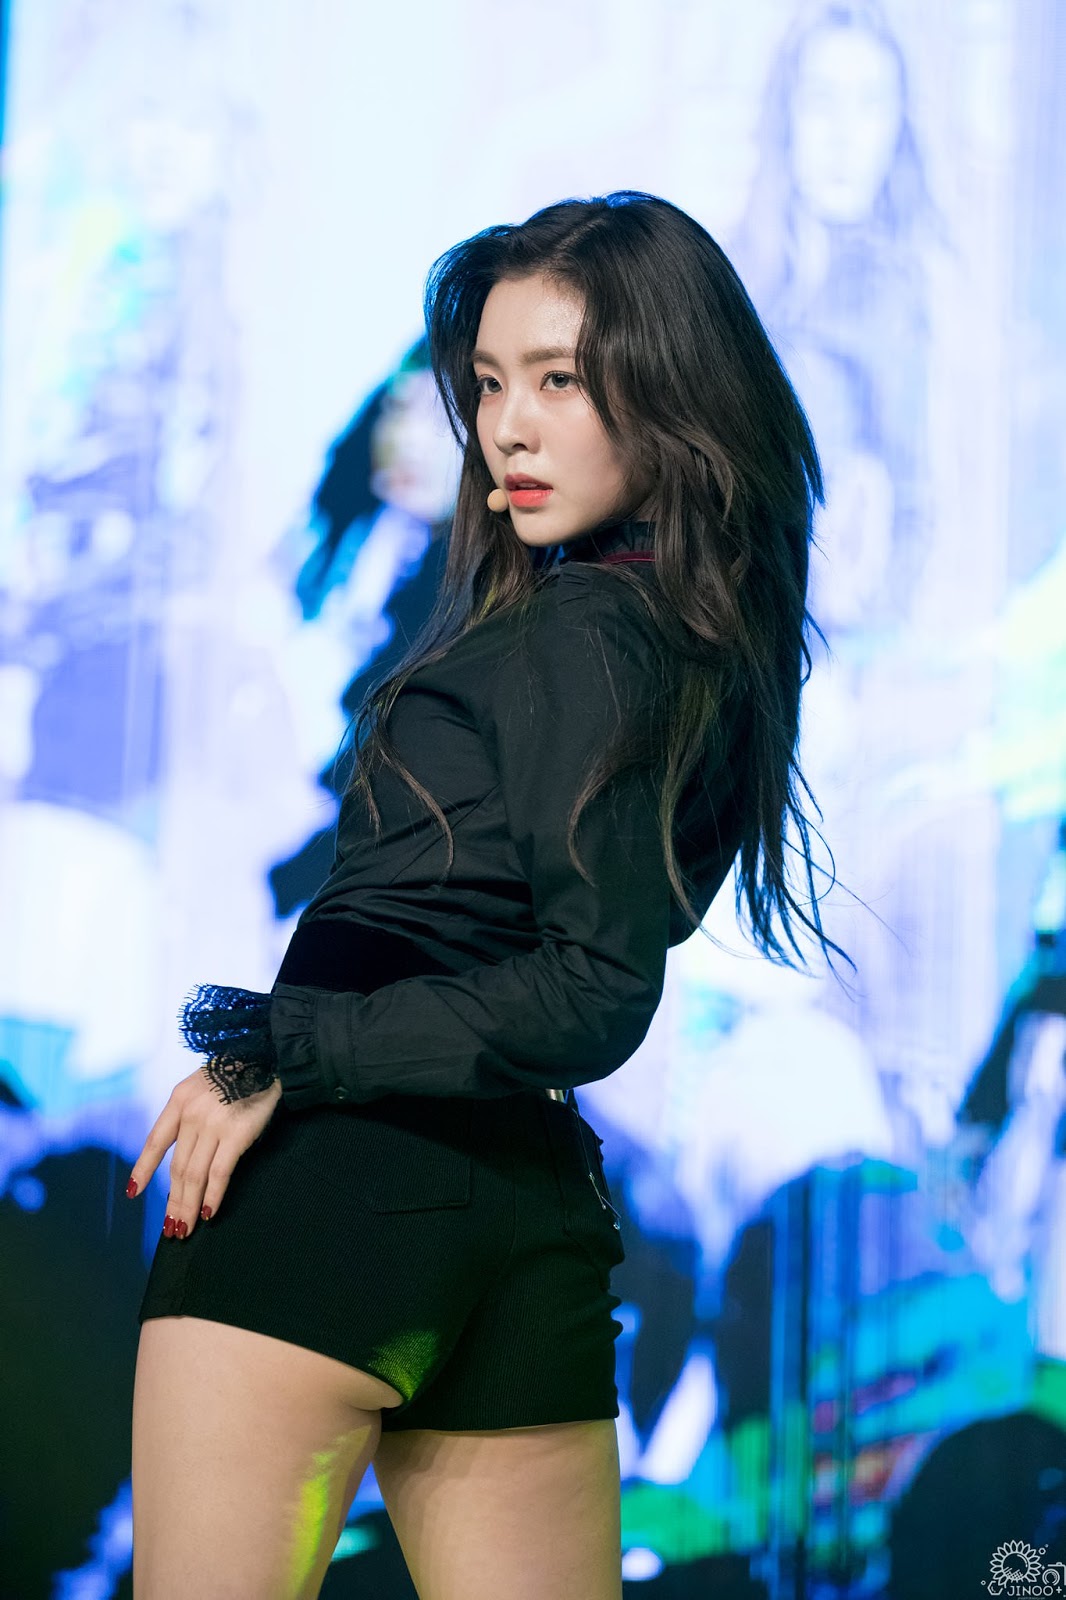 Red Velvet Irene Showcases Her Sexiness In New Performance Kpop News